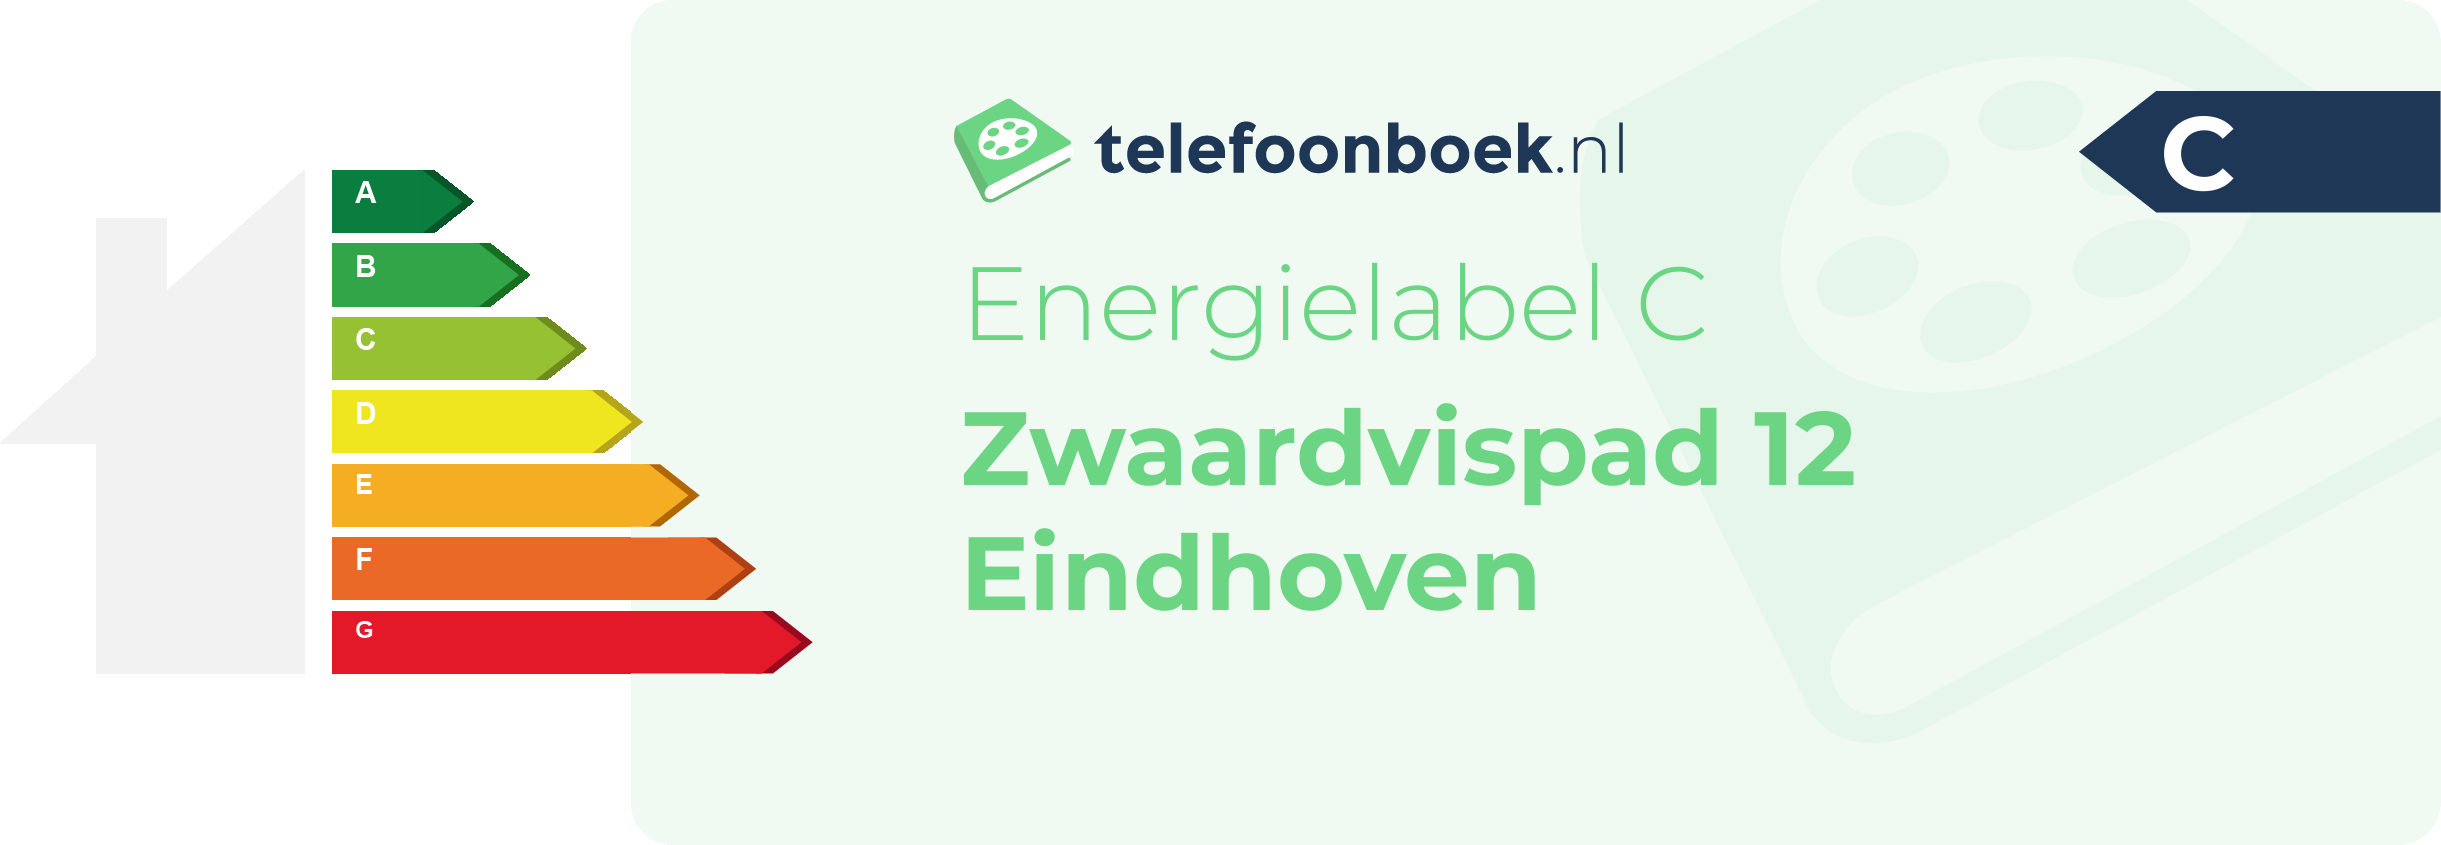 Energielabel Zwaardvispad 12 Eindhoven